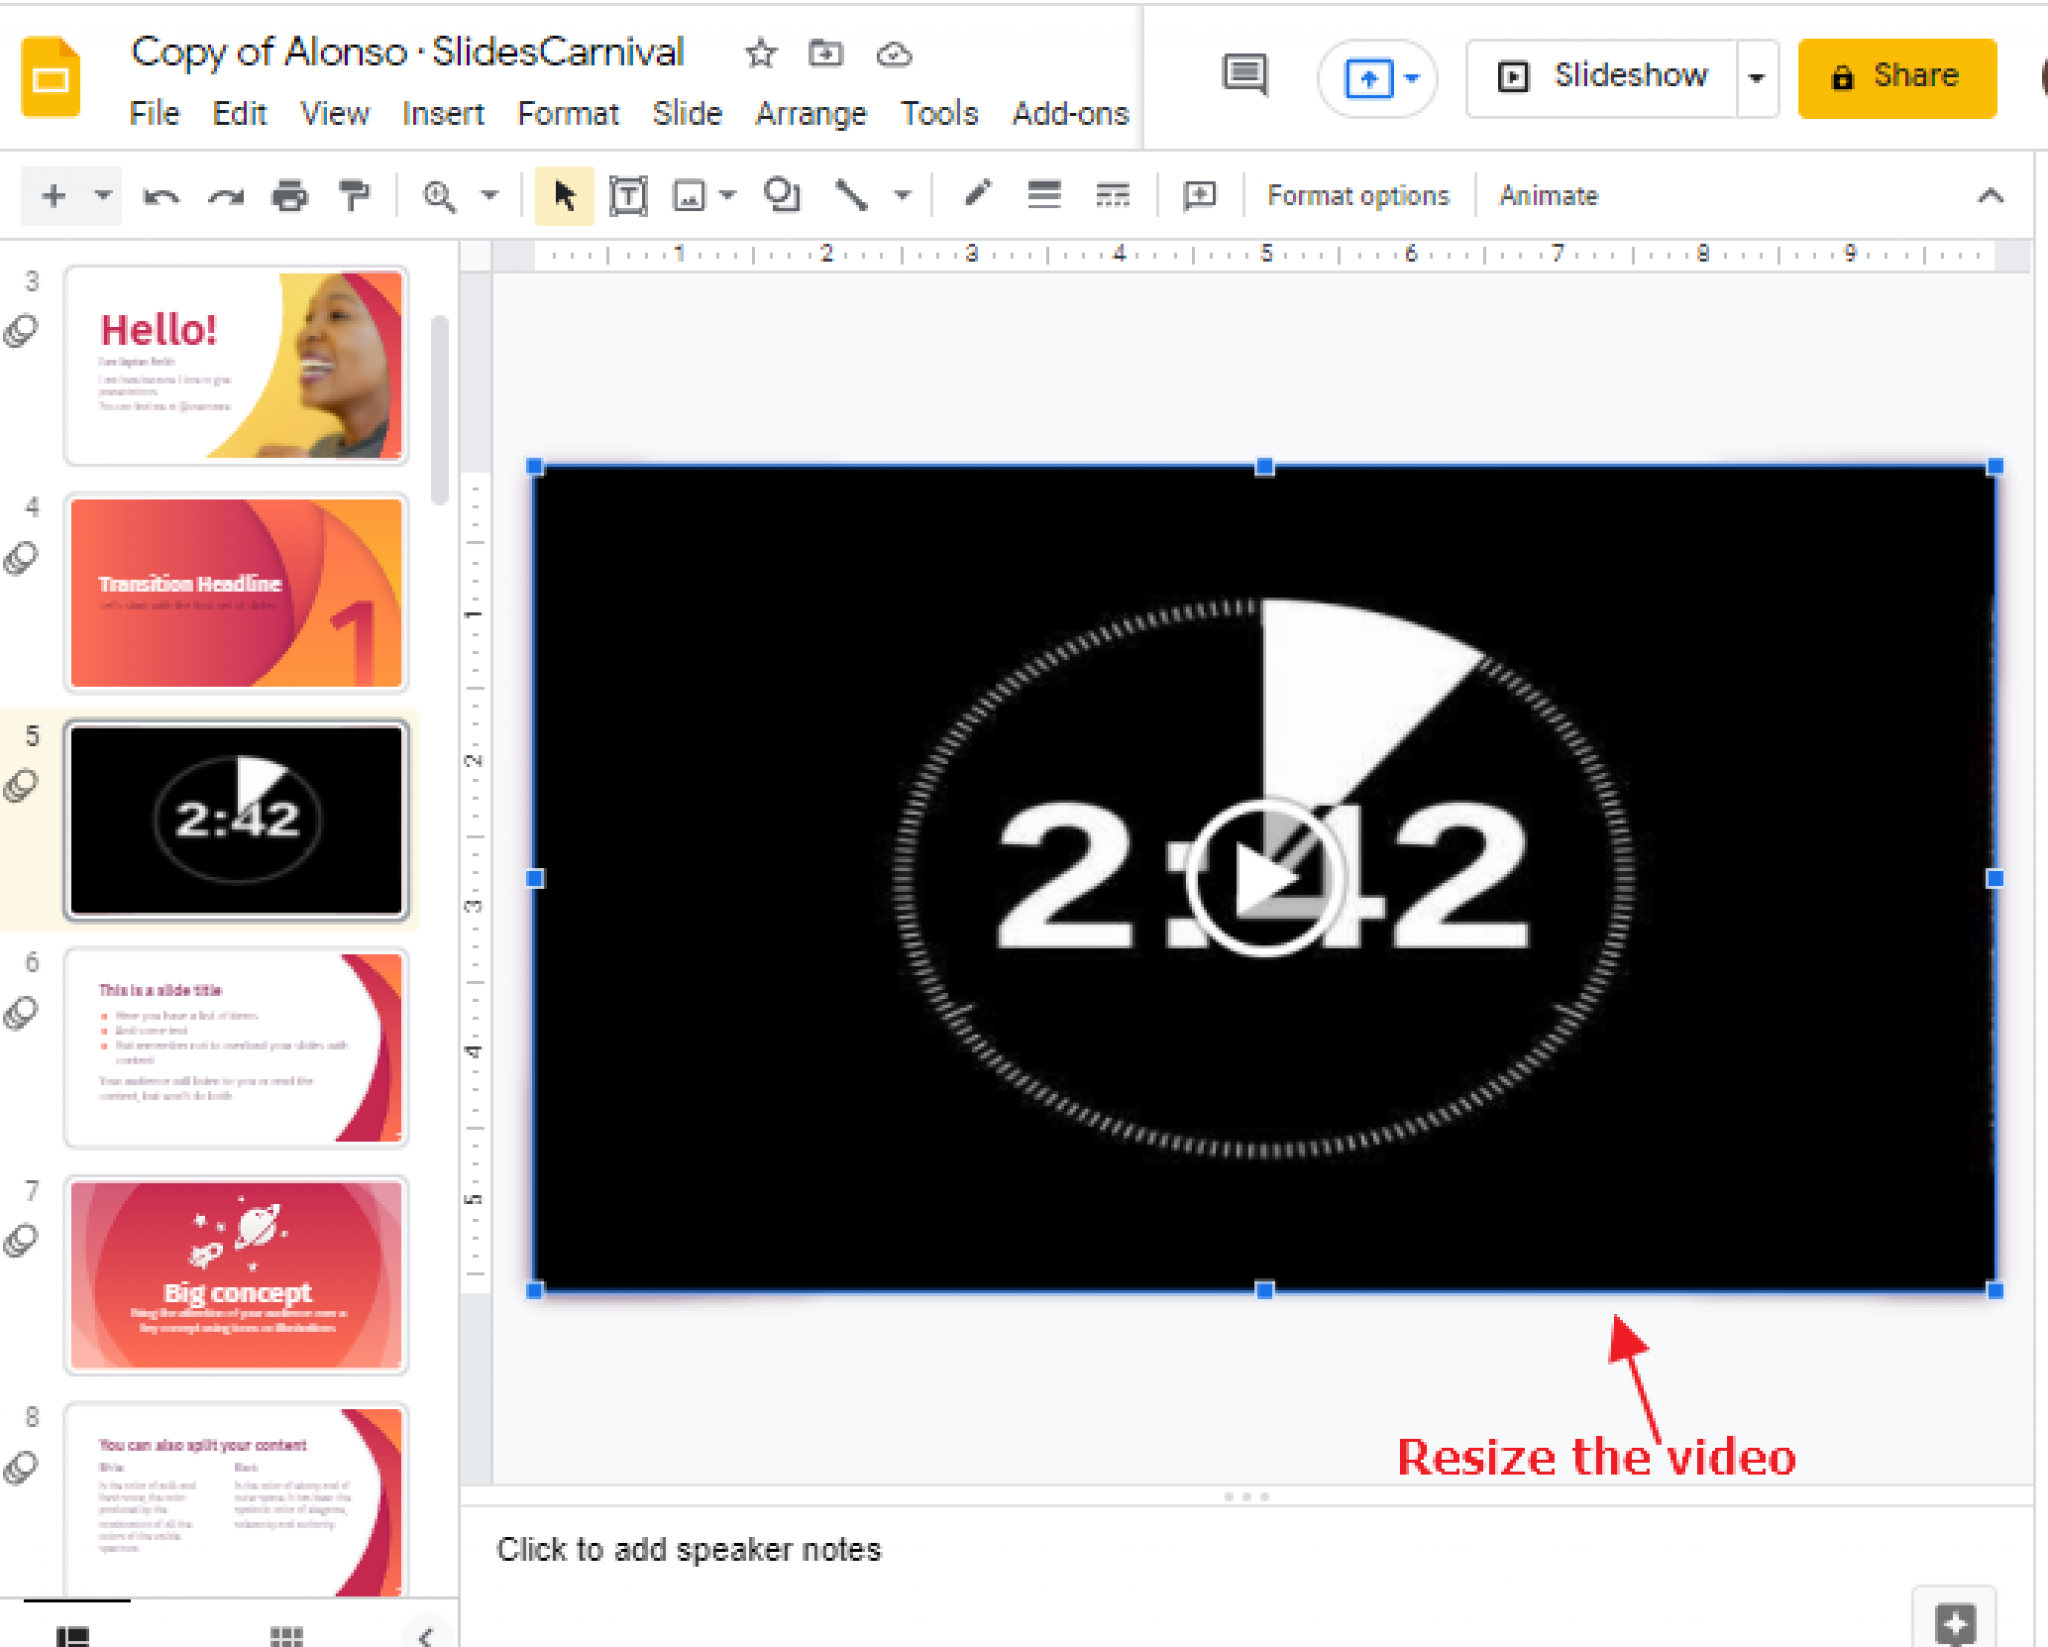 google presentation slide timer